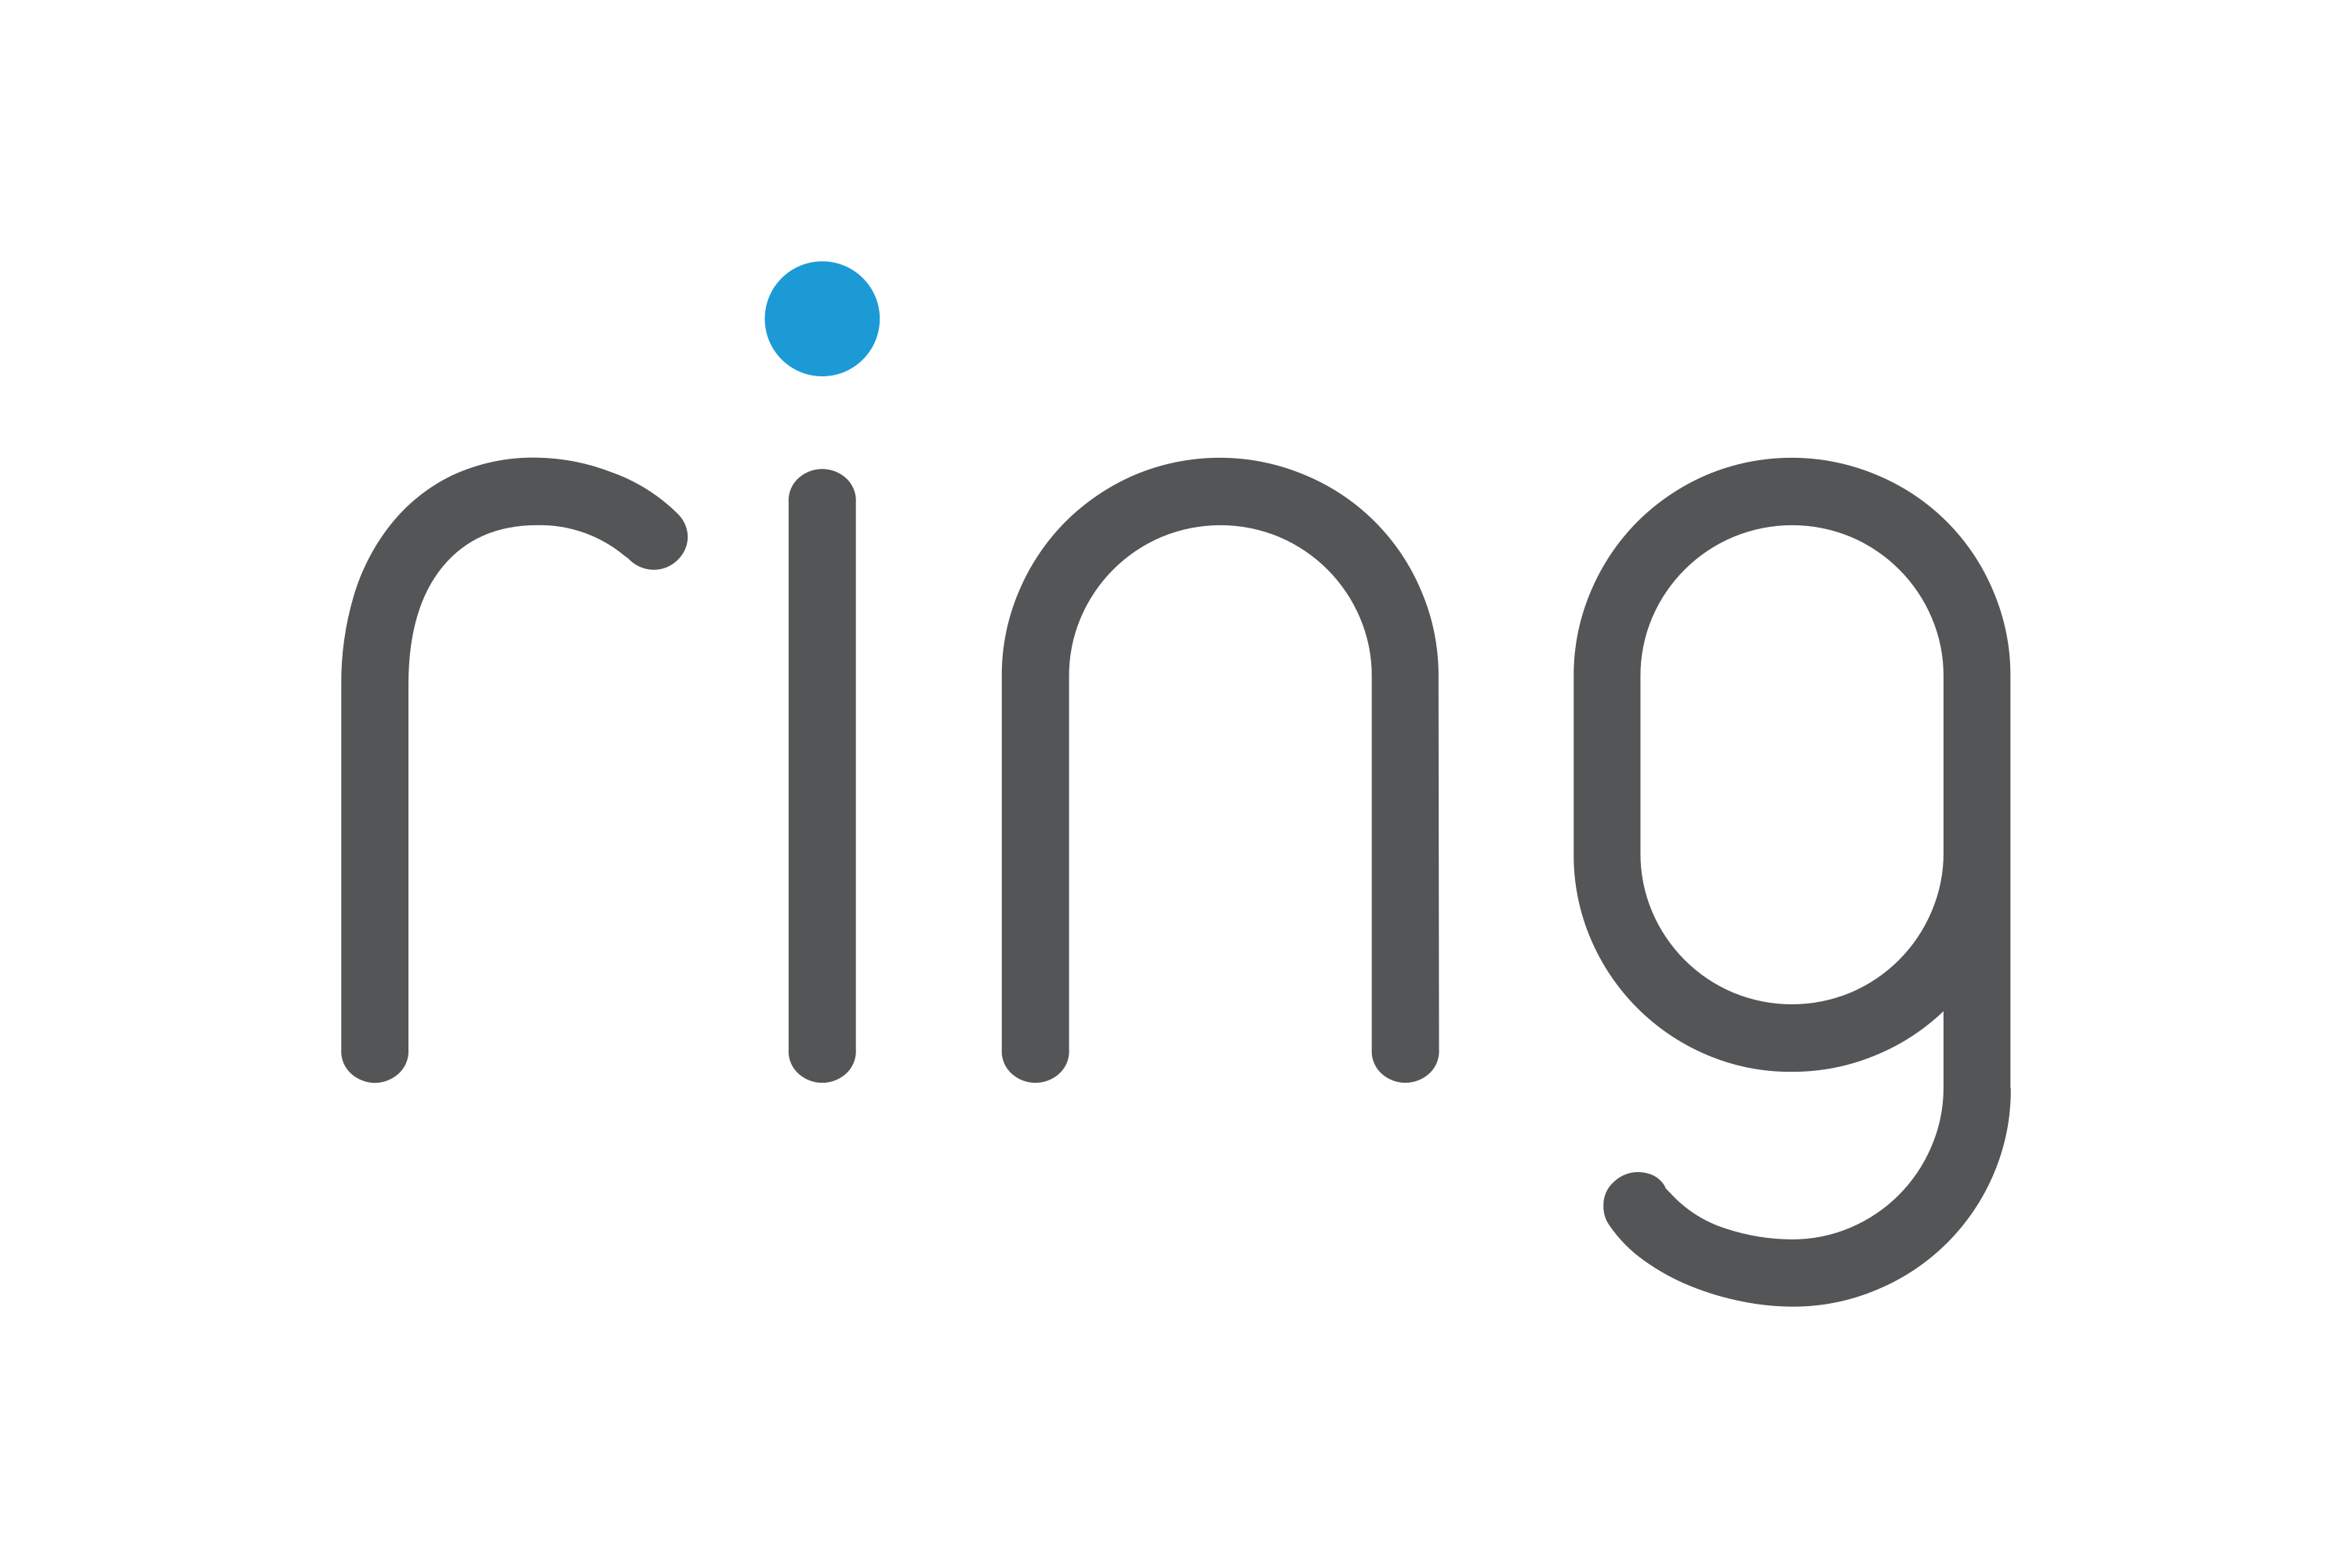 Download Ring  Logo  in SVG Vector or PNG File Format Logo  